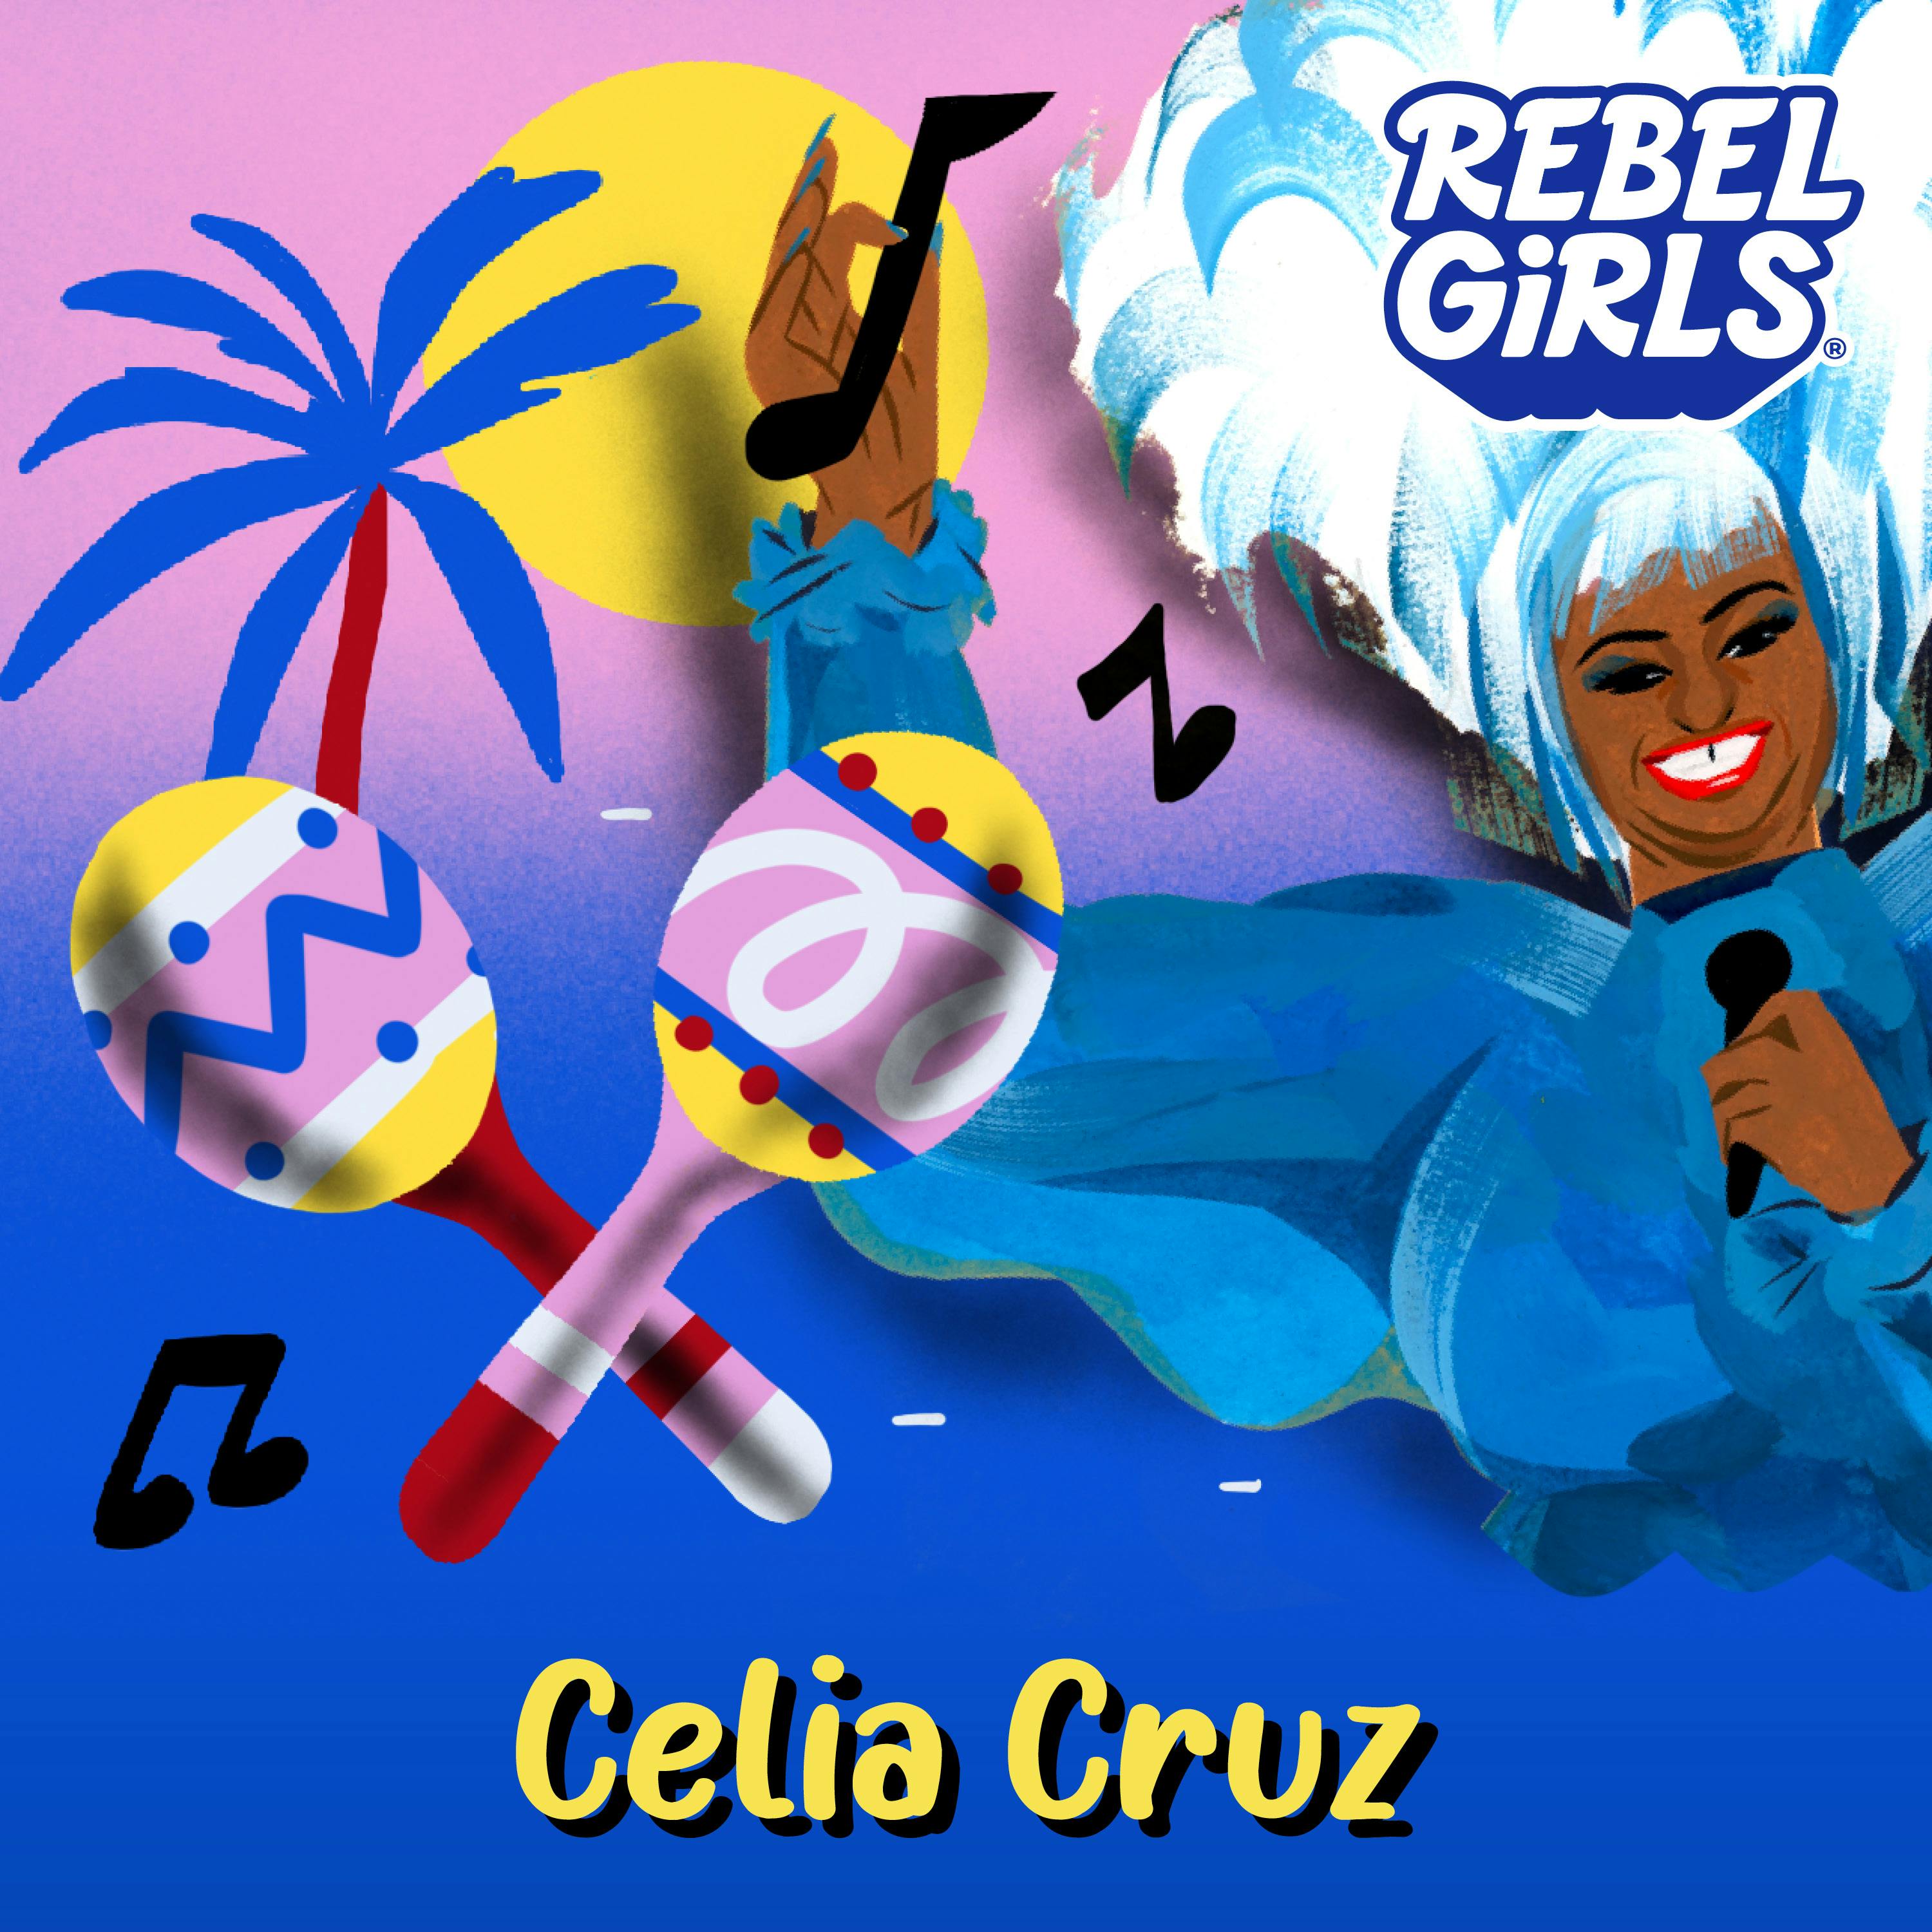 Celia Cruz Read by Justina Machado